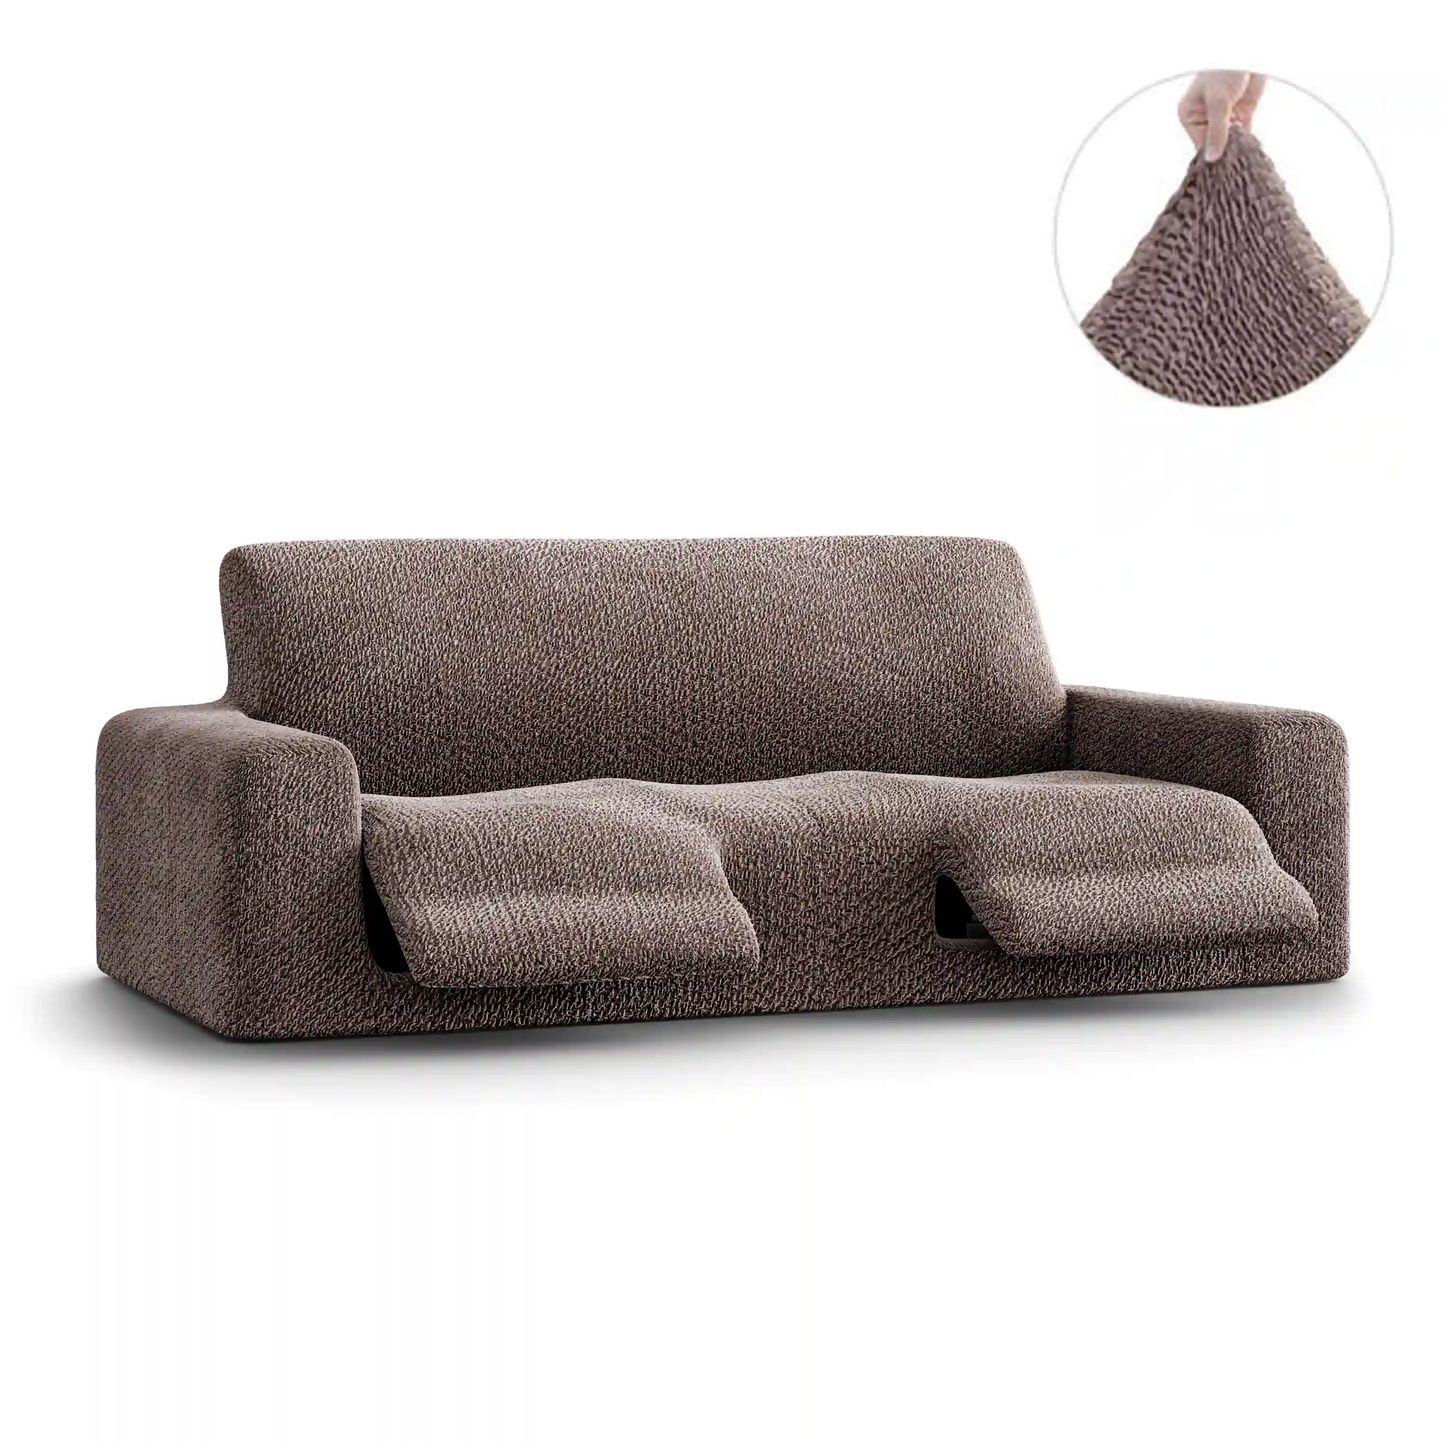 3 Seater Recliner Sofa Cover - Brown, Velvet